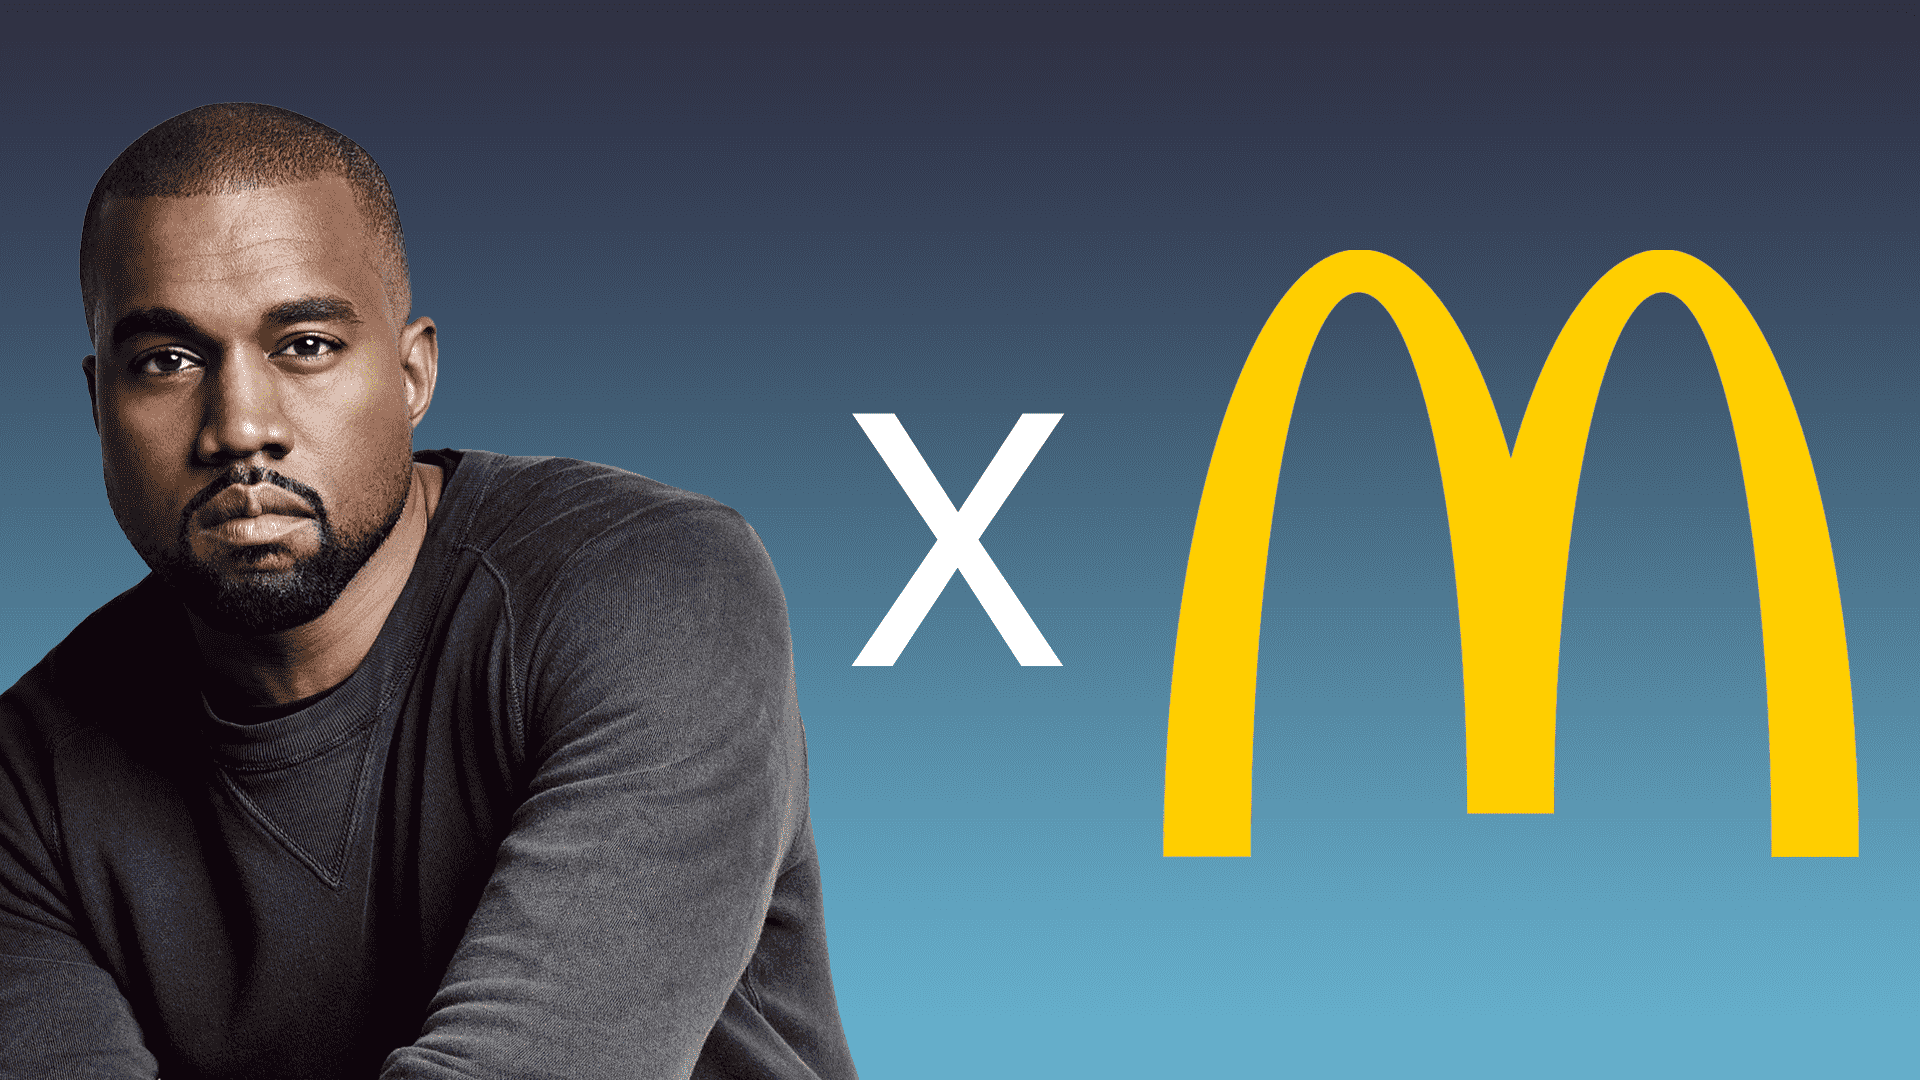 No estoy seguro de cómo sentirme con el diseño de empaque de McDonald's de Kanye West.